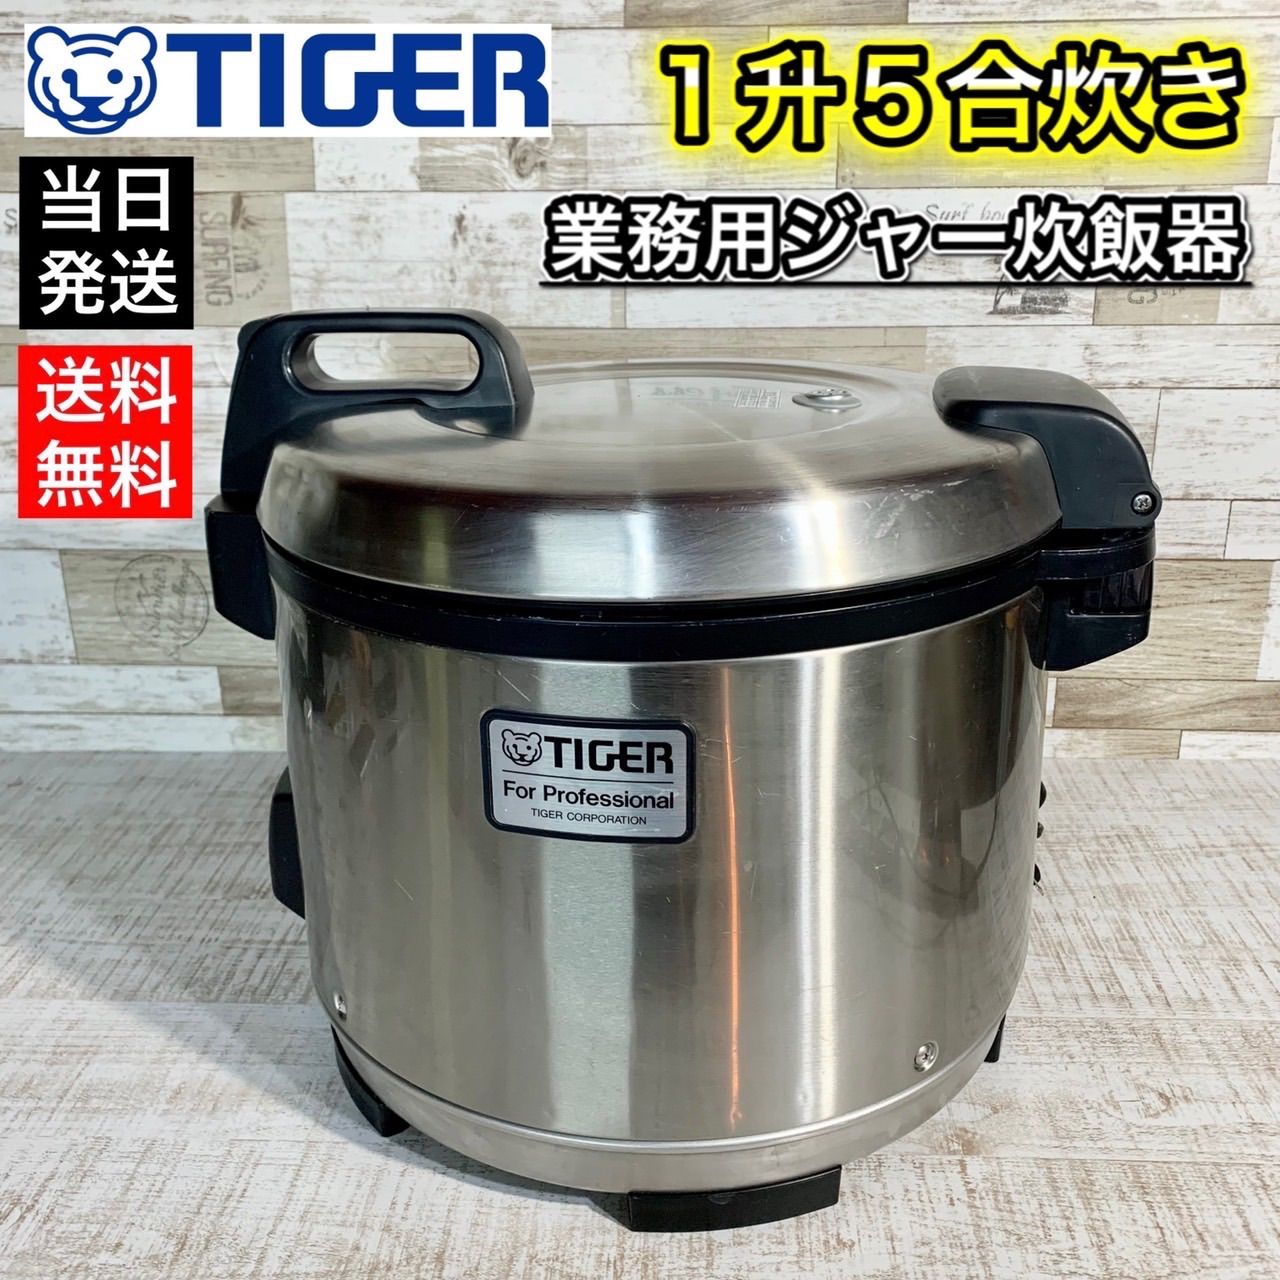 税込 タイガー 業務用炊飯ジャー 2.7L 1.5升 炊きたて ステンレス JNO-A271 XS